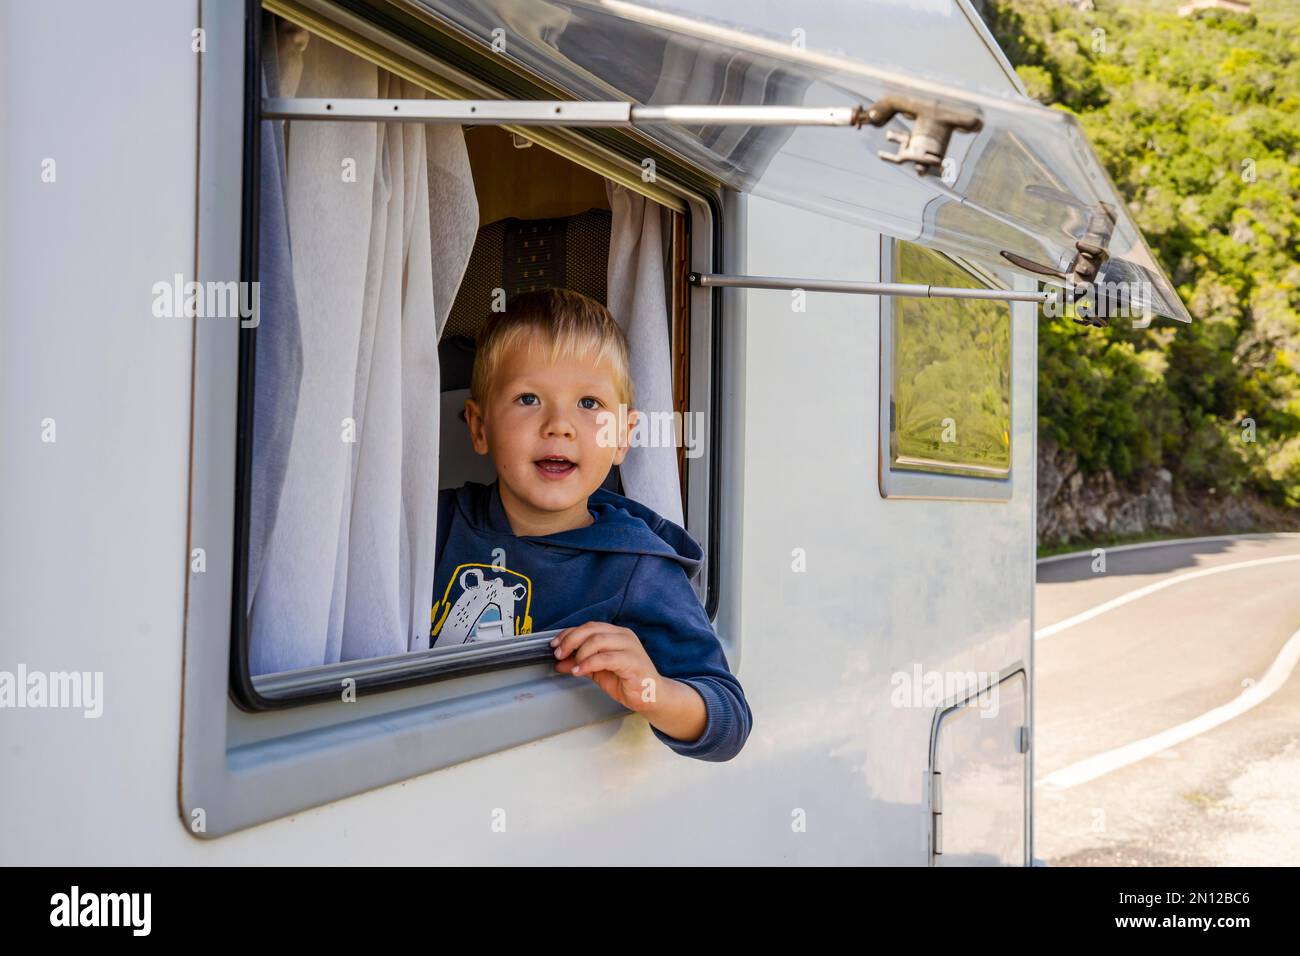 Glücklicher kleiner Junge, der durch das Fenster des Wohnmobils schaute, das an der Straße geparkt war, Portugal, Europa Stockfoto